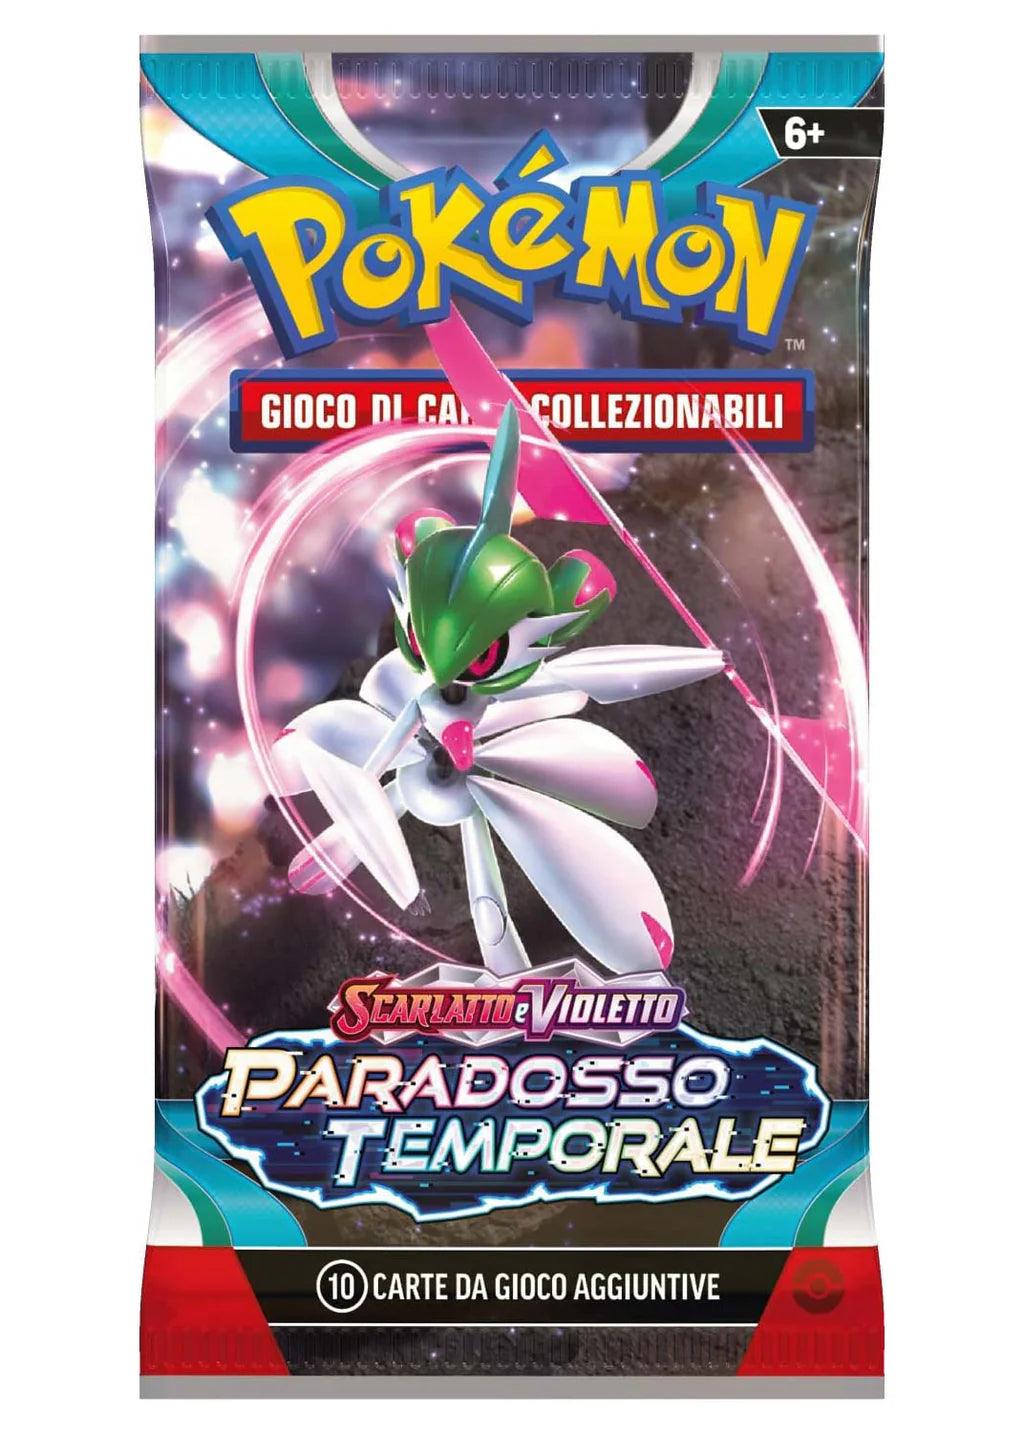 Pokemon - Bustina - Scarlatto e Violetto - Paradosso Temporale - Magic Dreams Store